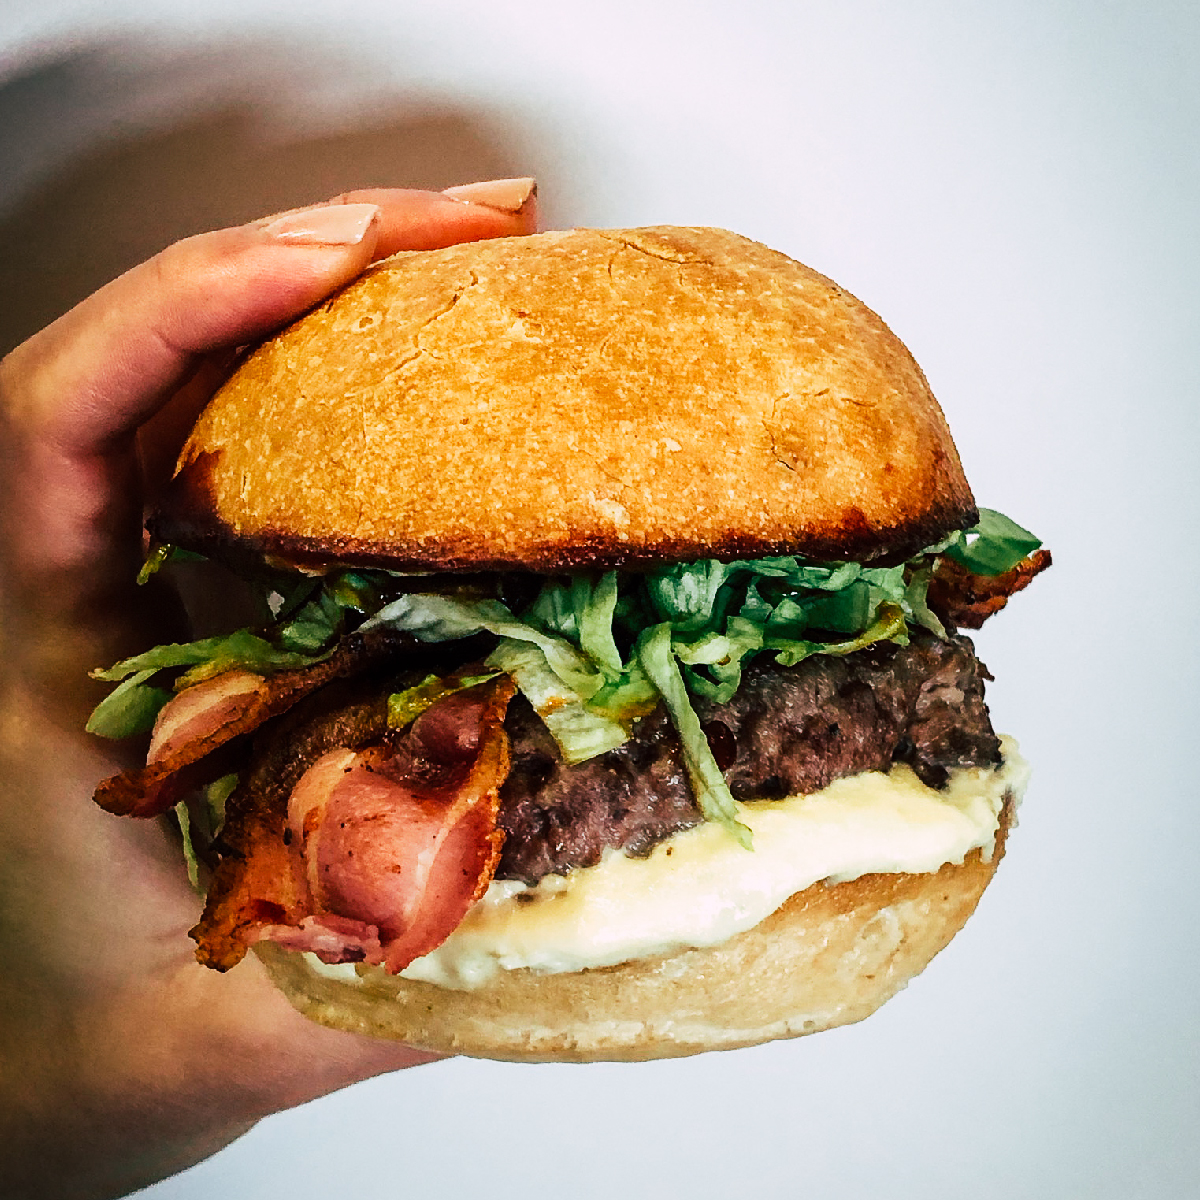 Trilussa, è il nome di uno degli hamburger artigianali e senza glutine di Erudito